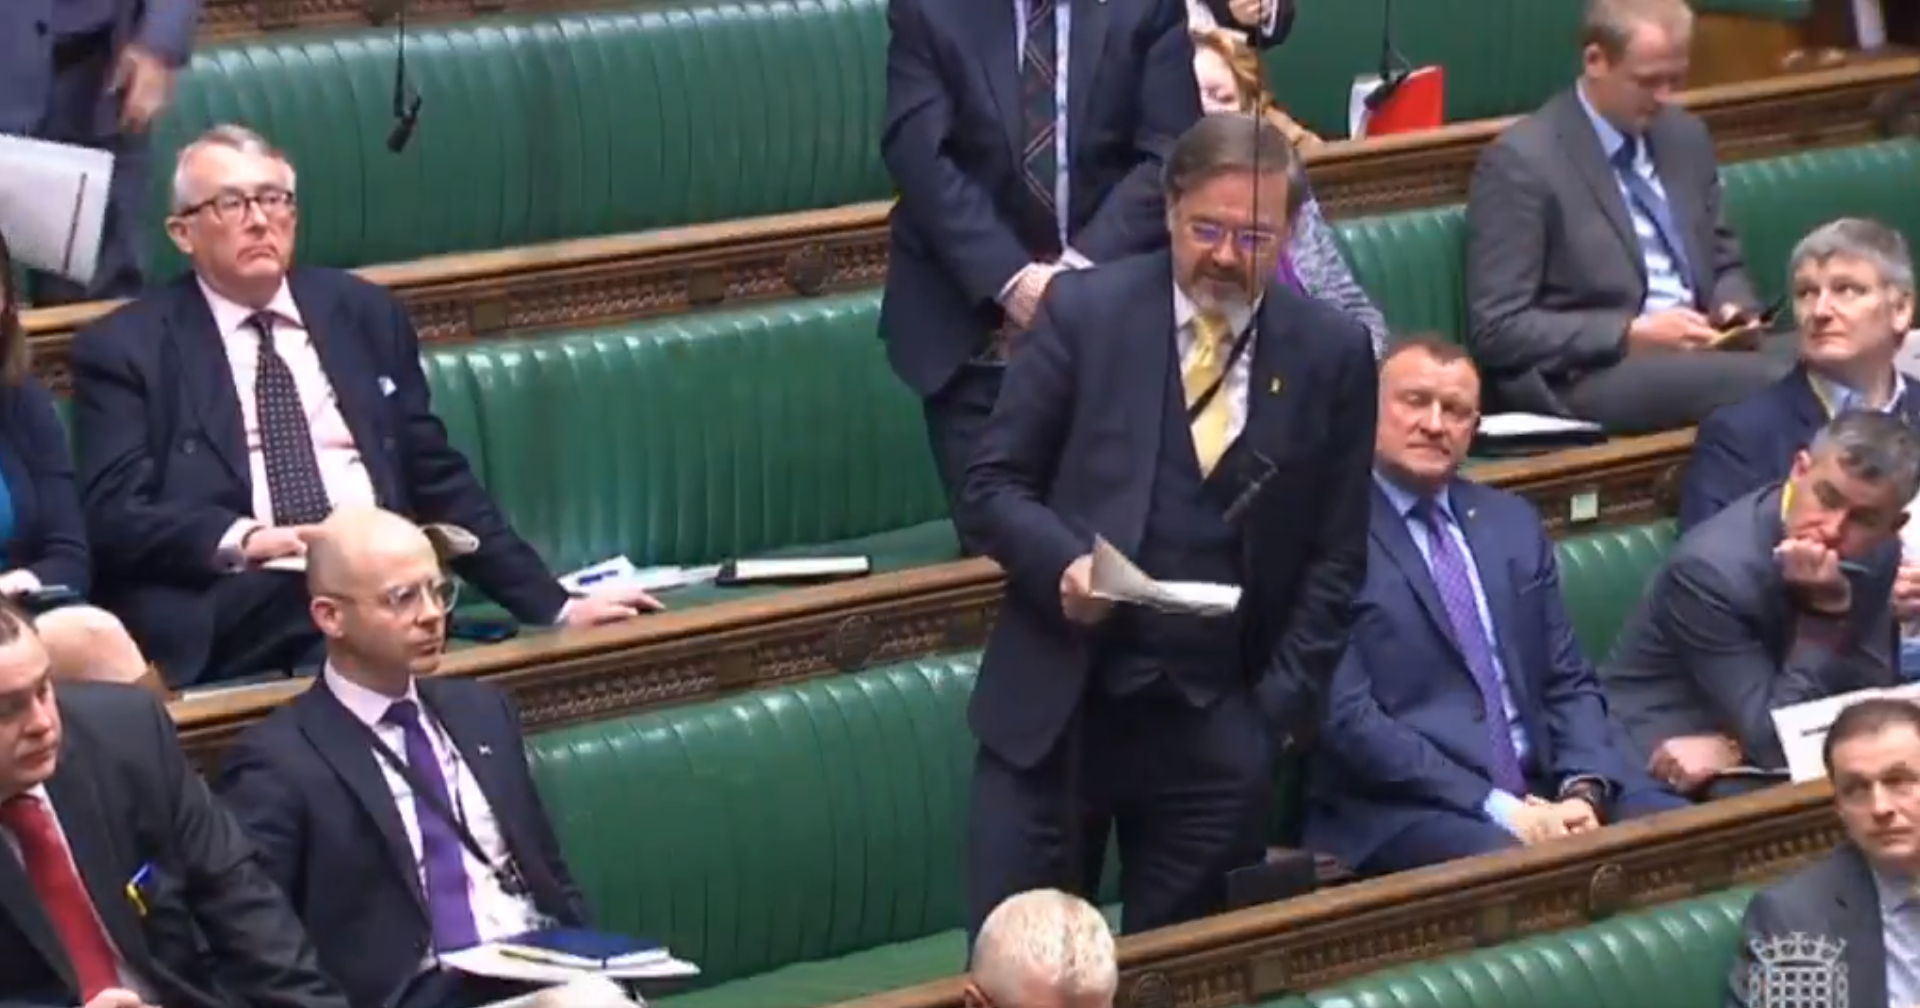 Vídeo: Un diputat denuncia l'empresonament de Forcadell al Parlament britànic